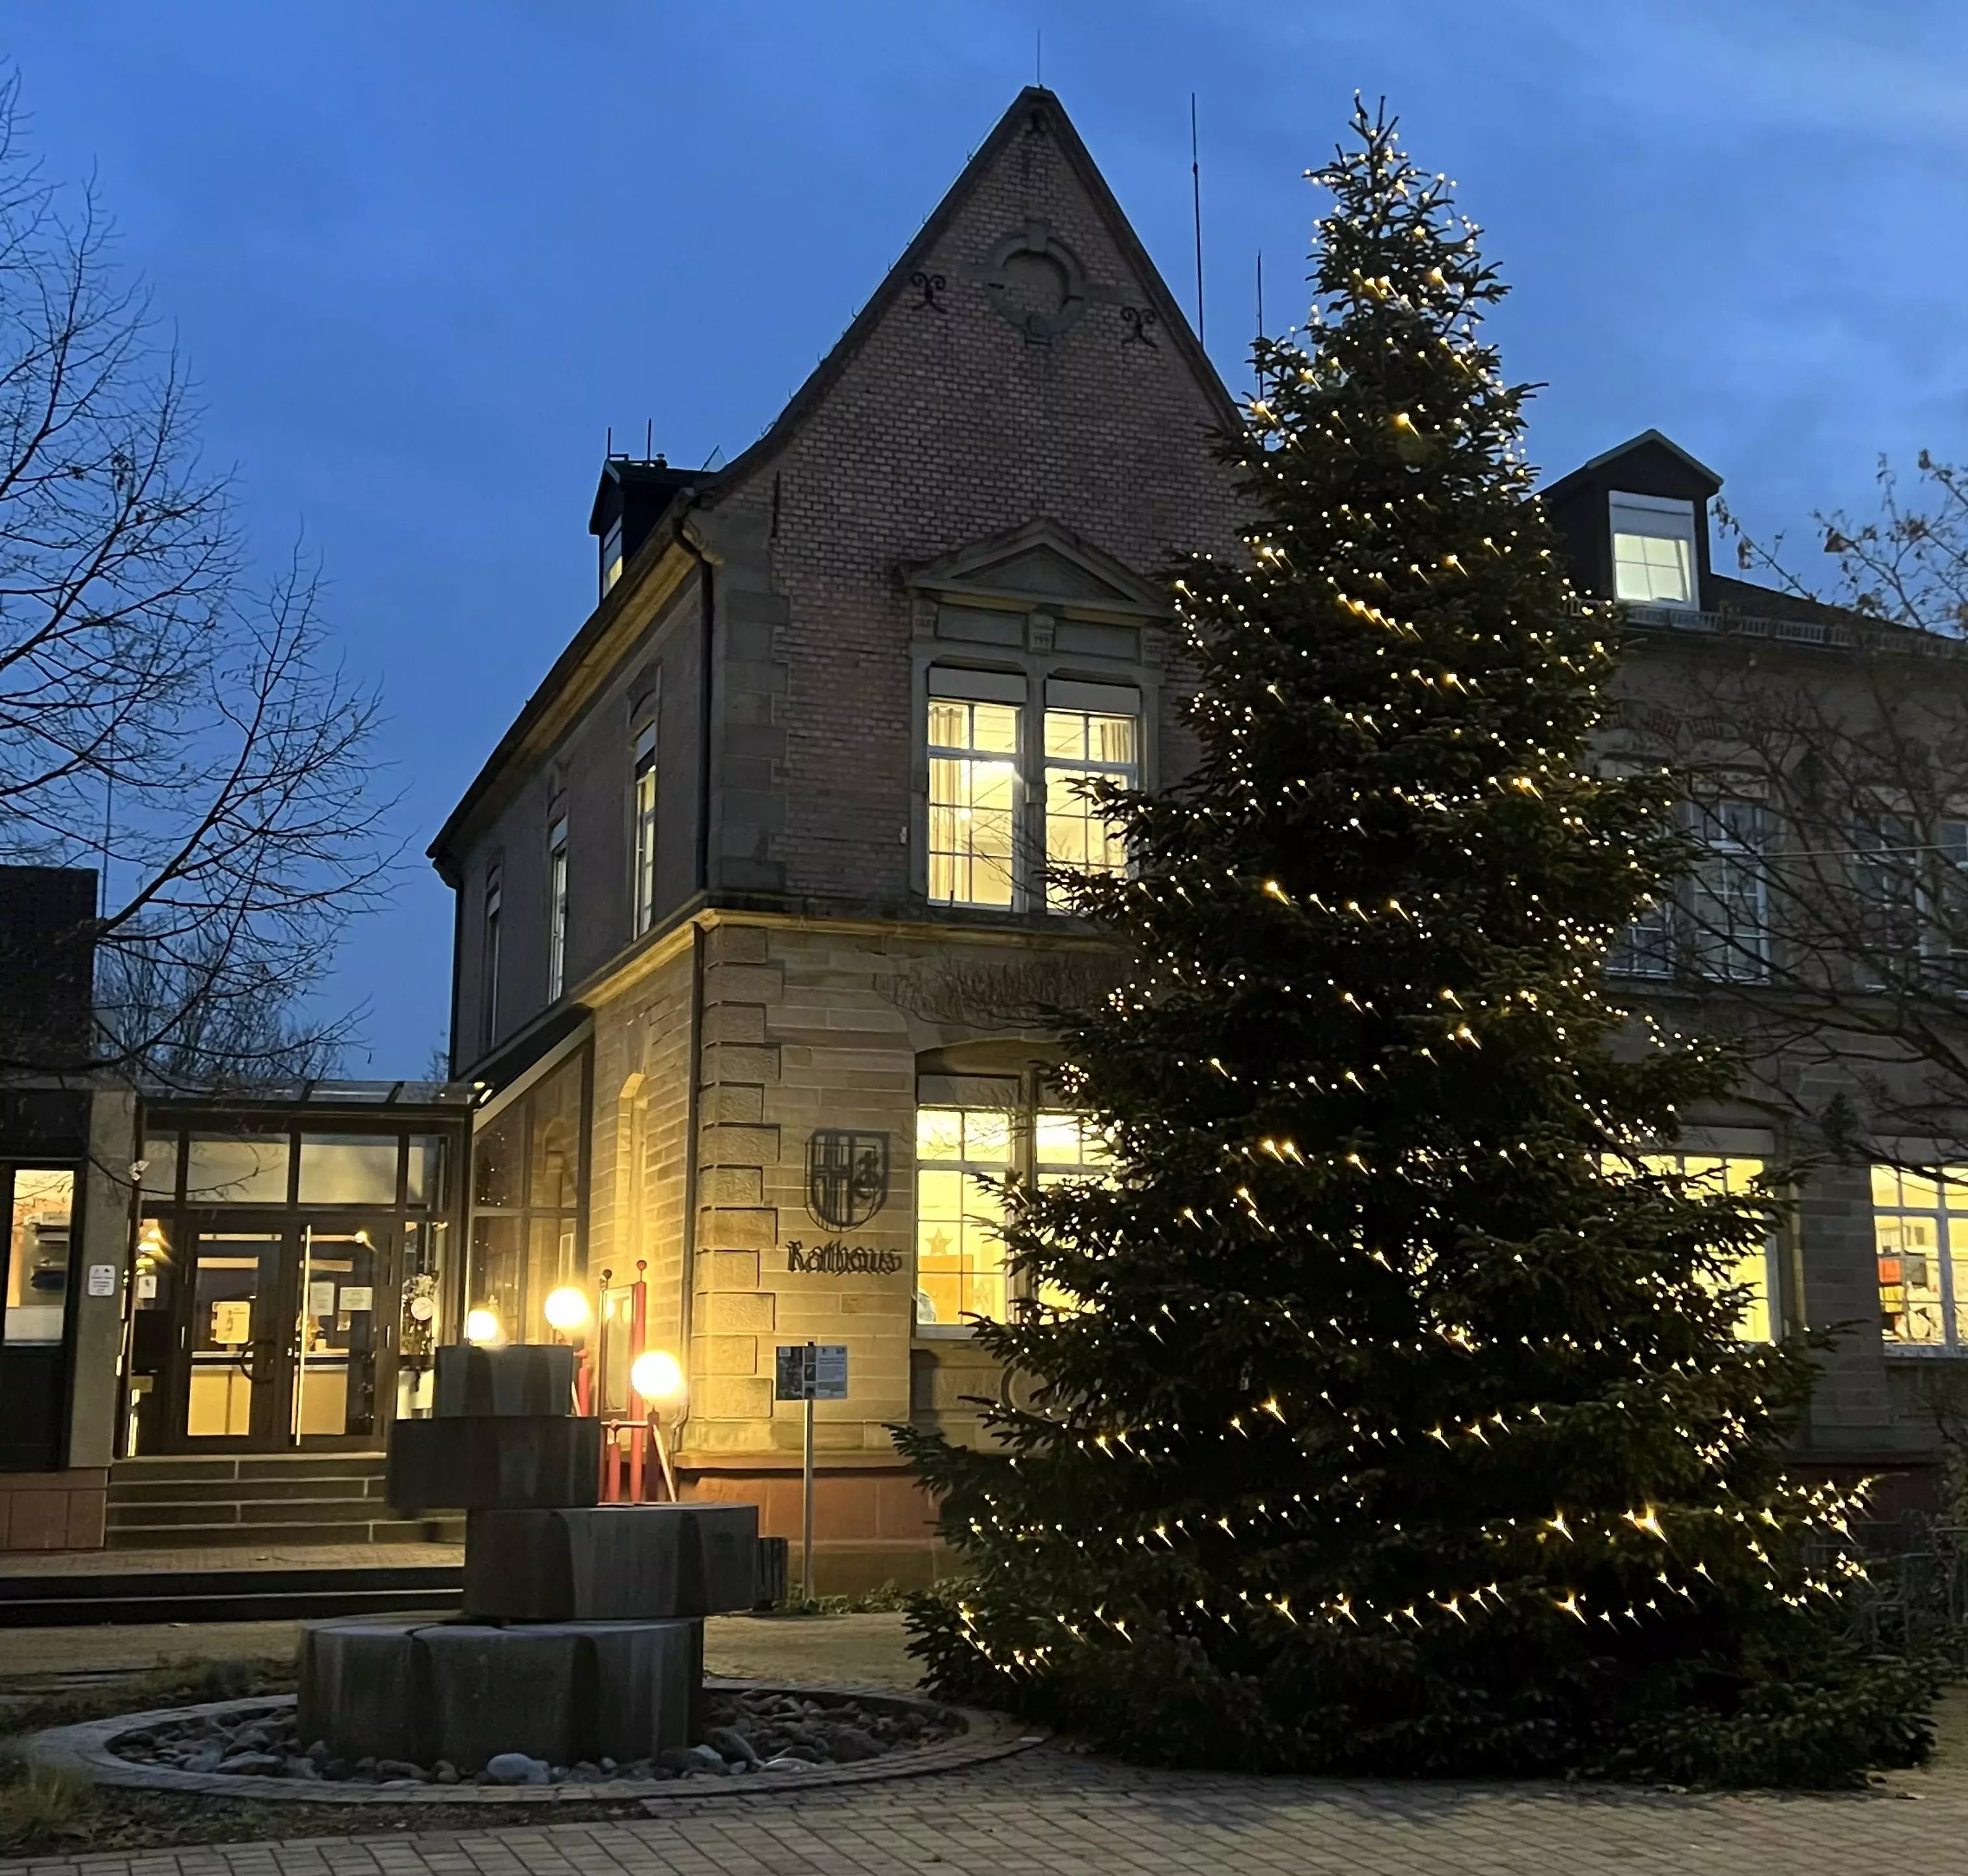 Rathaus in Ubstadt weihnachtlich geschmückt